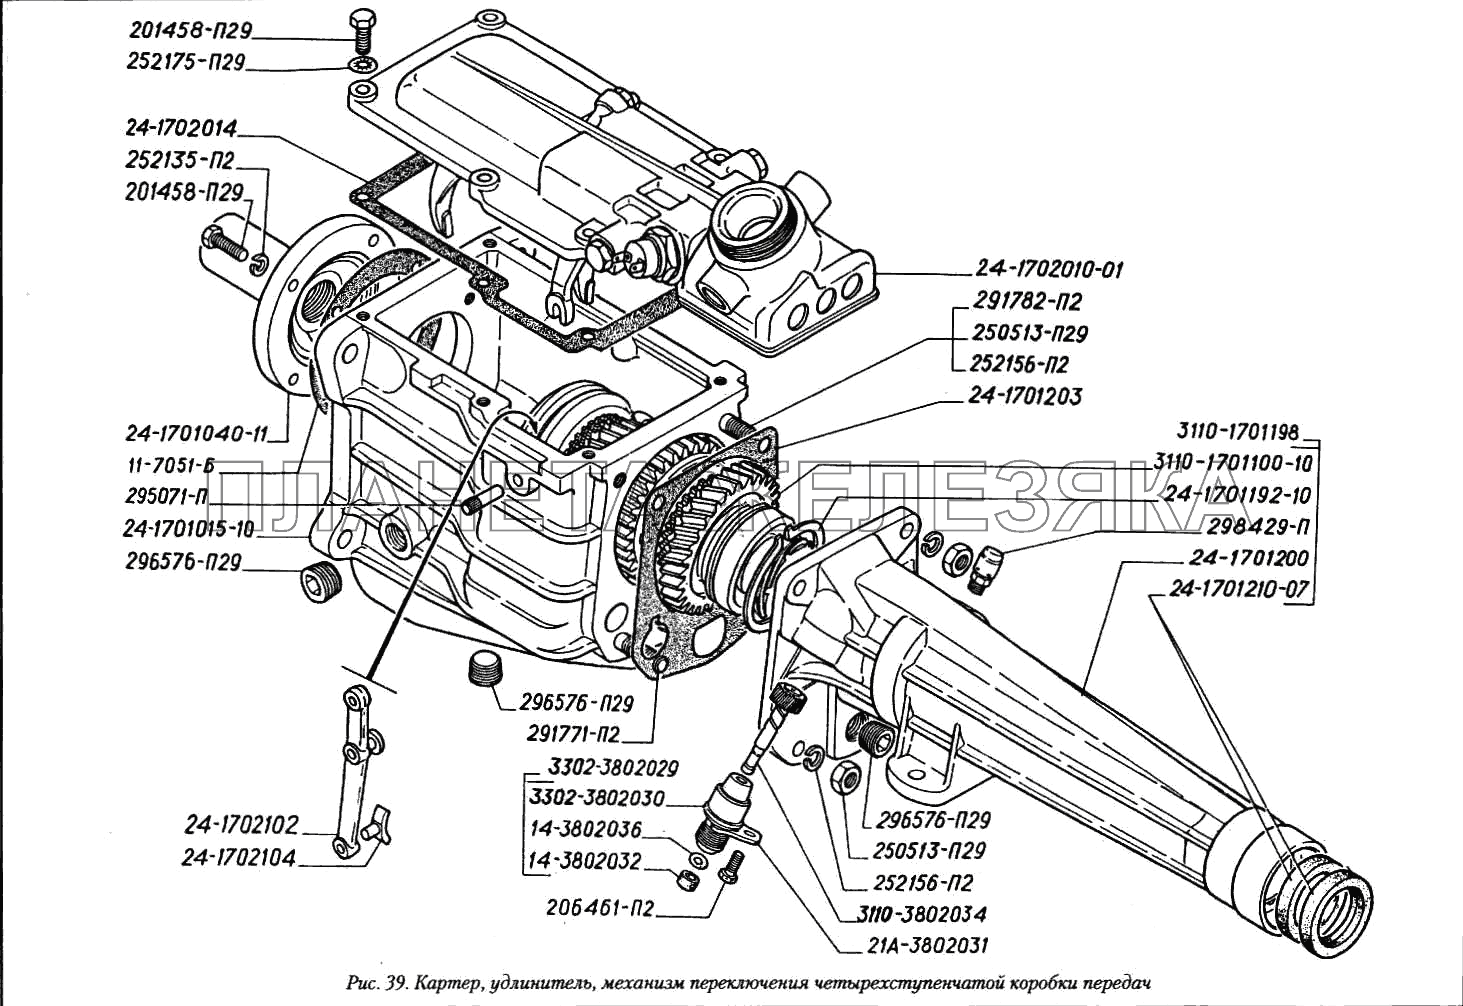 Картер, удлинитель, механизм переключения четырехступенчатой коробки передач ГАЗ-3110